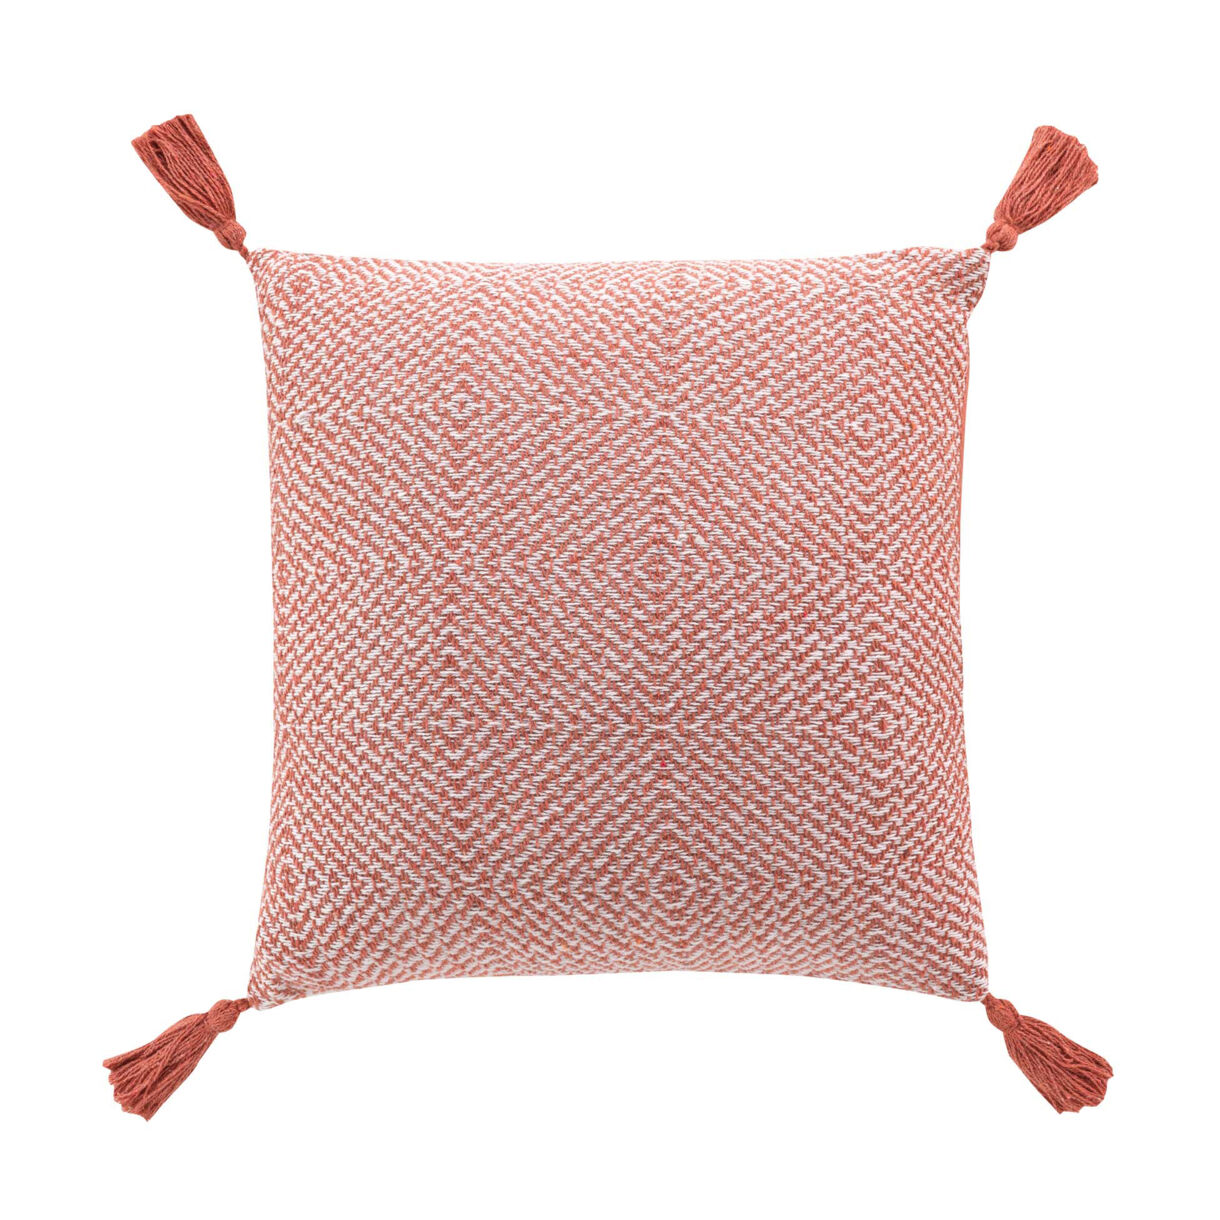 Cuscino quadrato cotone pon pon (40 x 40 cm) Louisette Terracotta